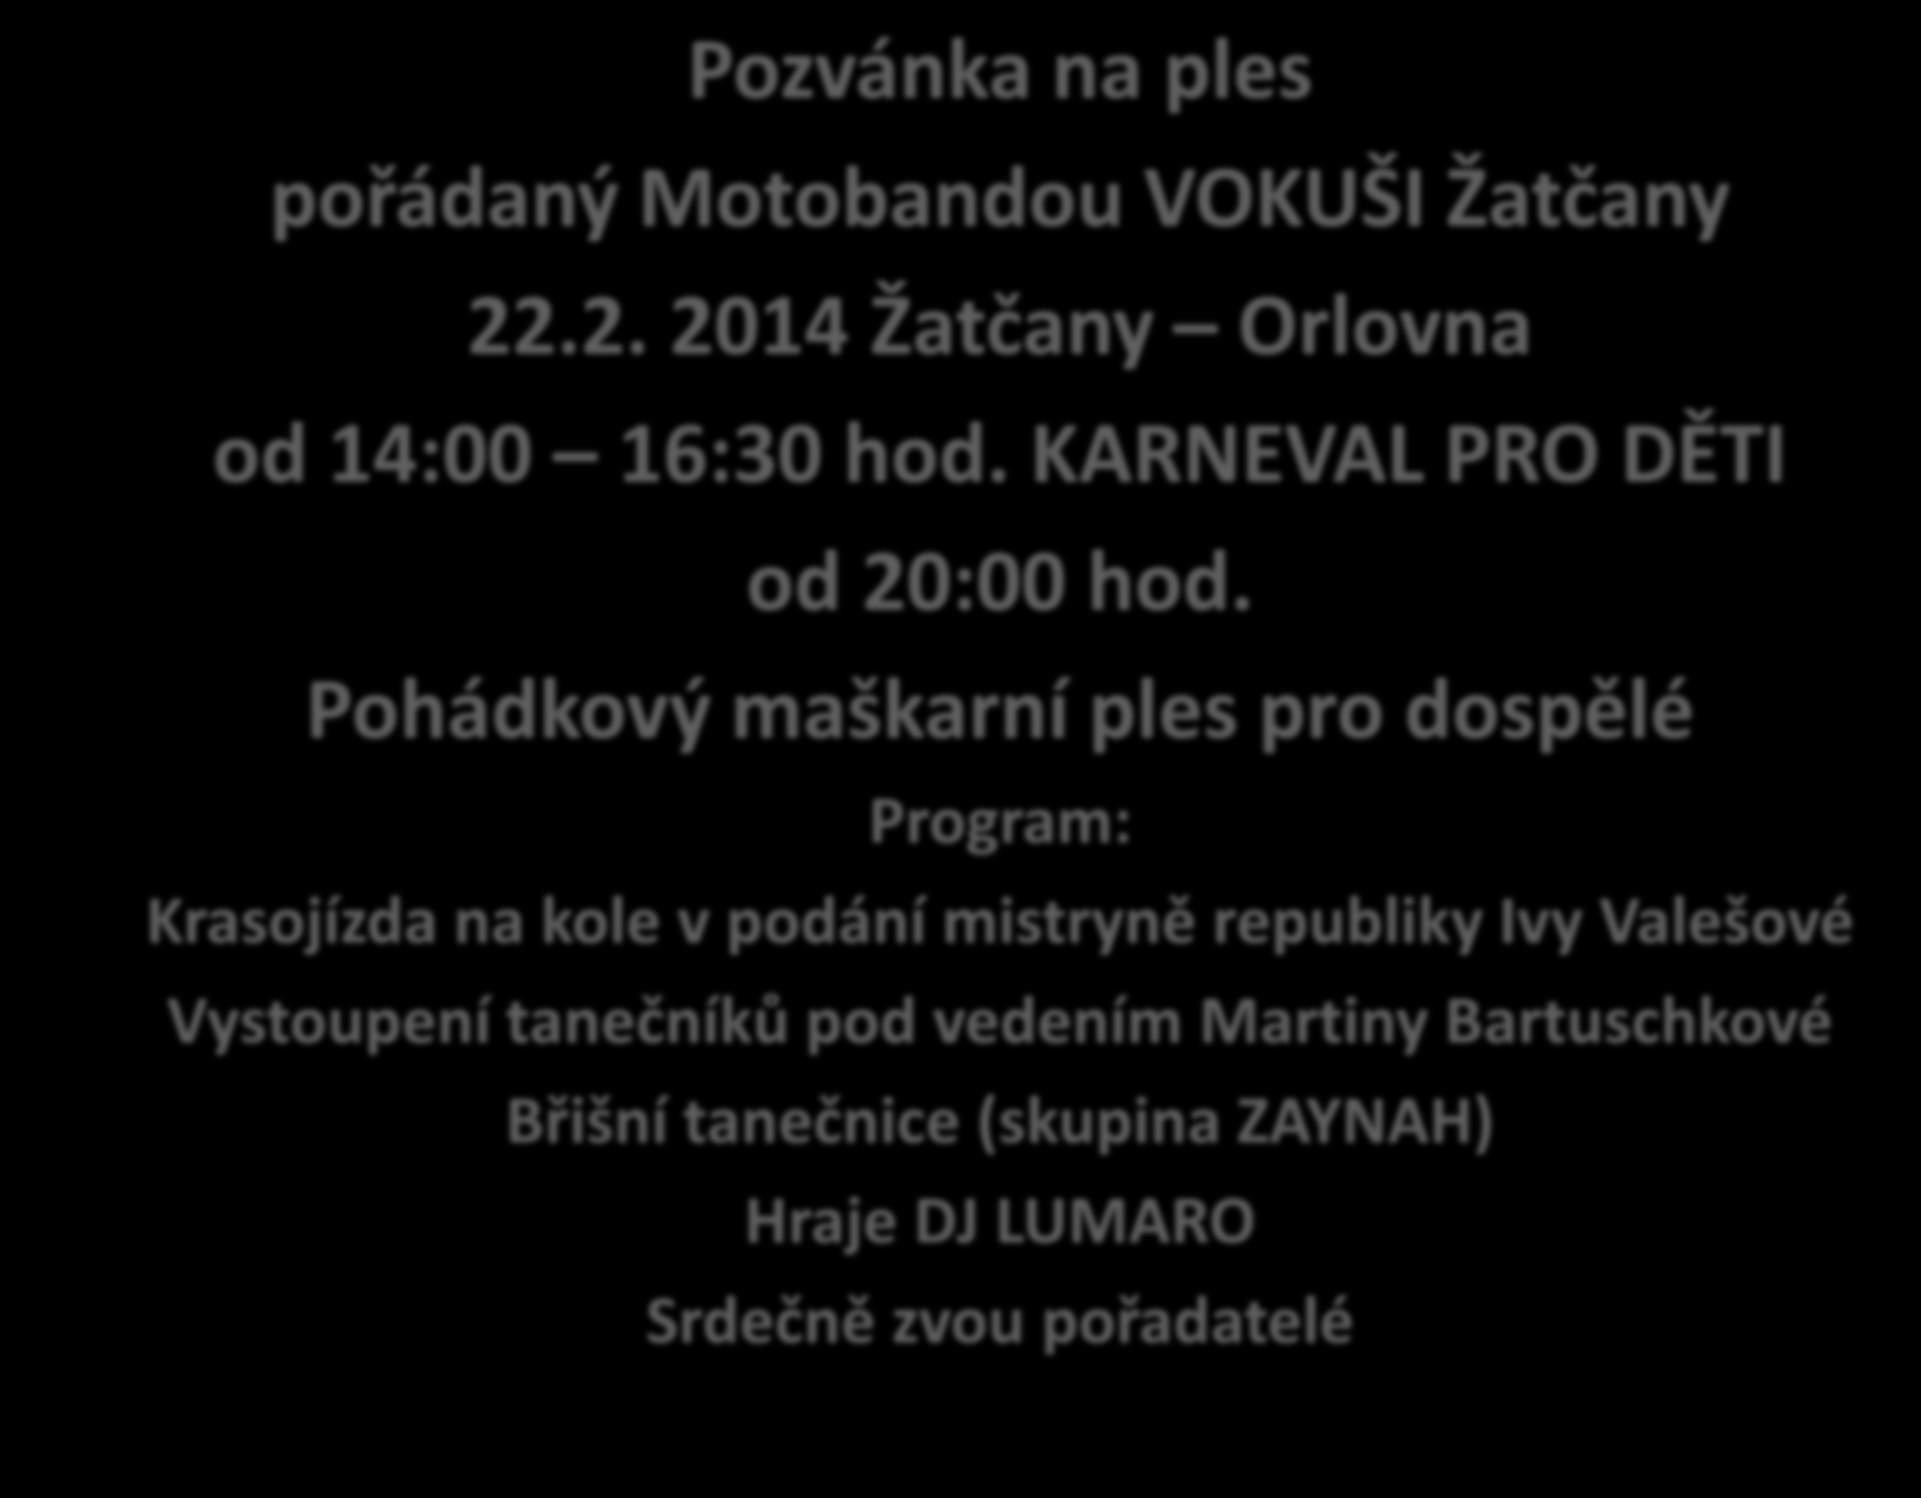 Pozvánka na ples pořádaný Motobandou VOKUŠI Žatčany 22.2. 2014 Žatčany Orlovna od 14:00 16:30 hod. KARNEVAL PRO DĚTI od 20:00 hod.